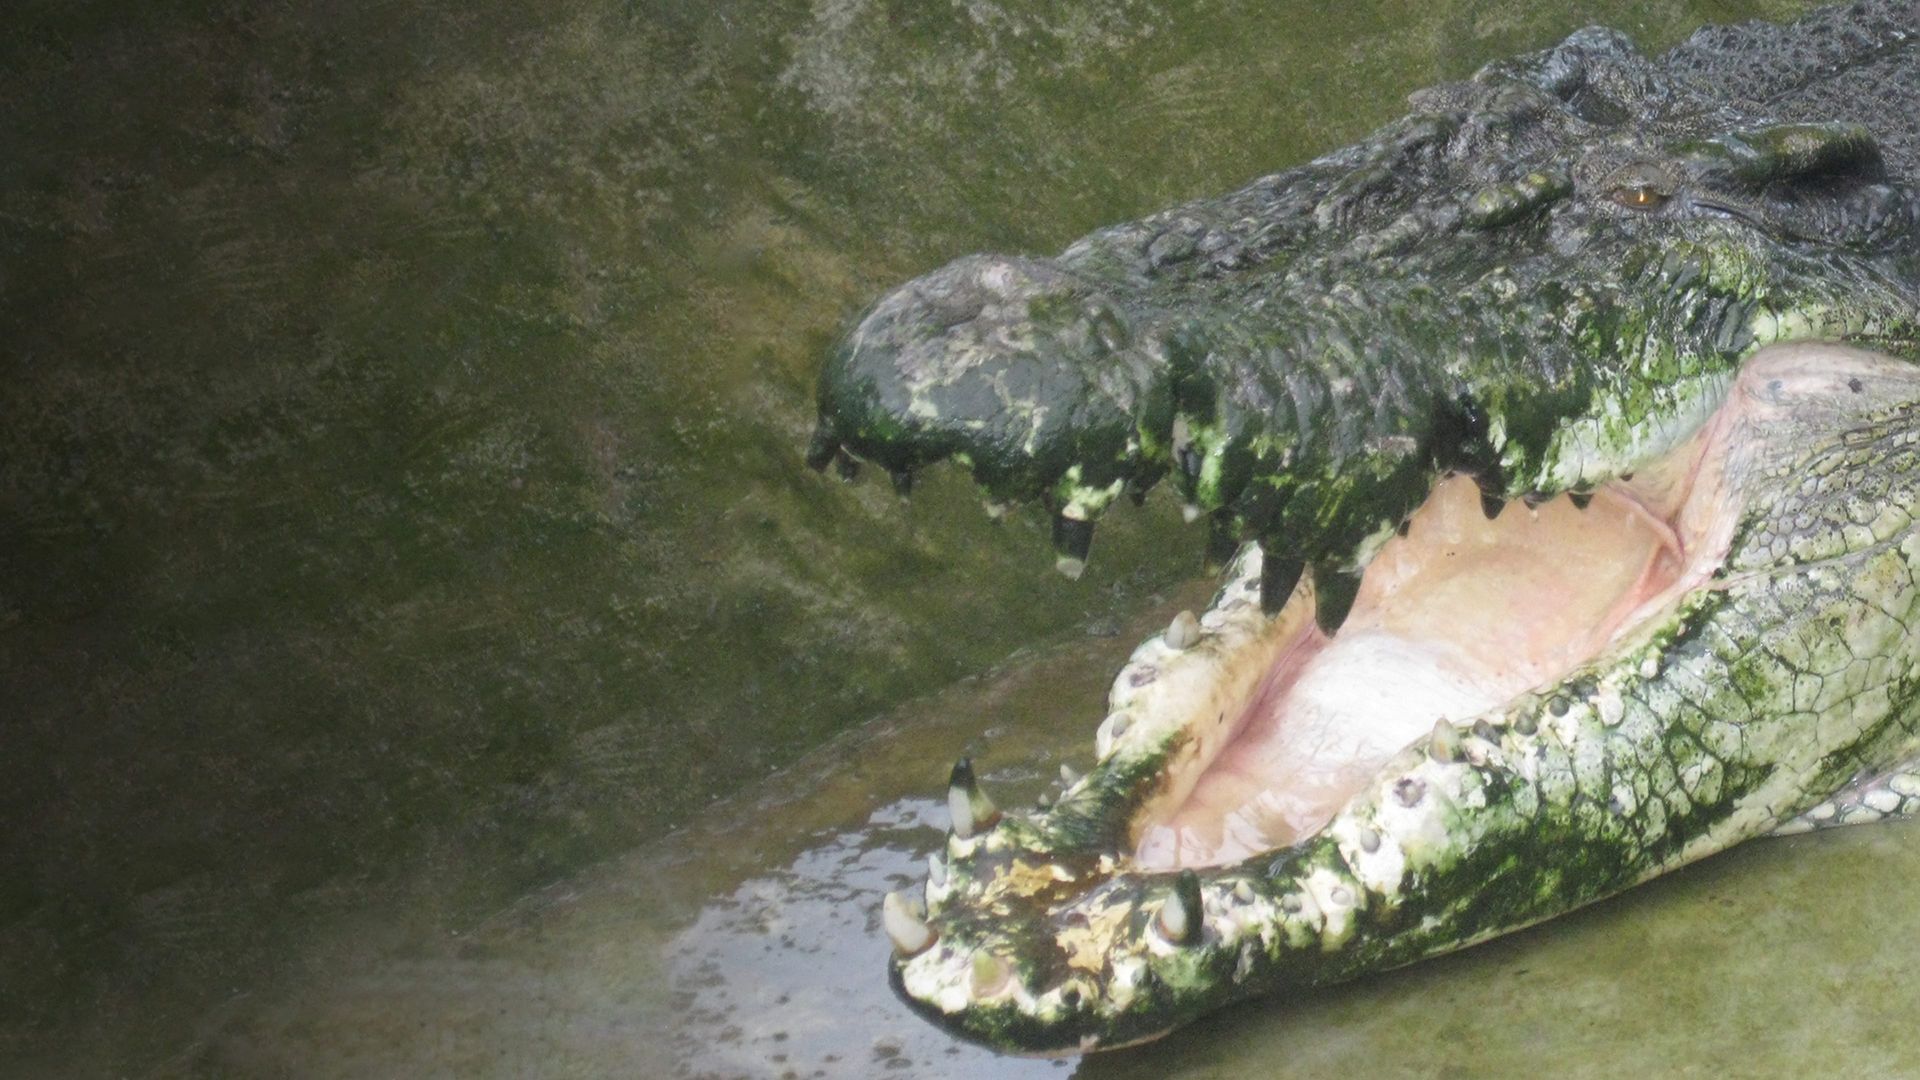 Man-Eating Super Croc background